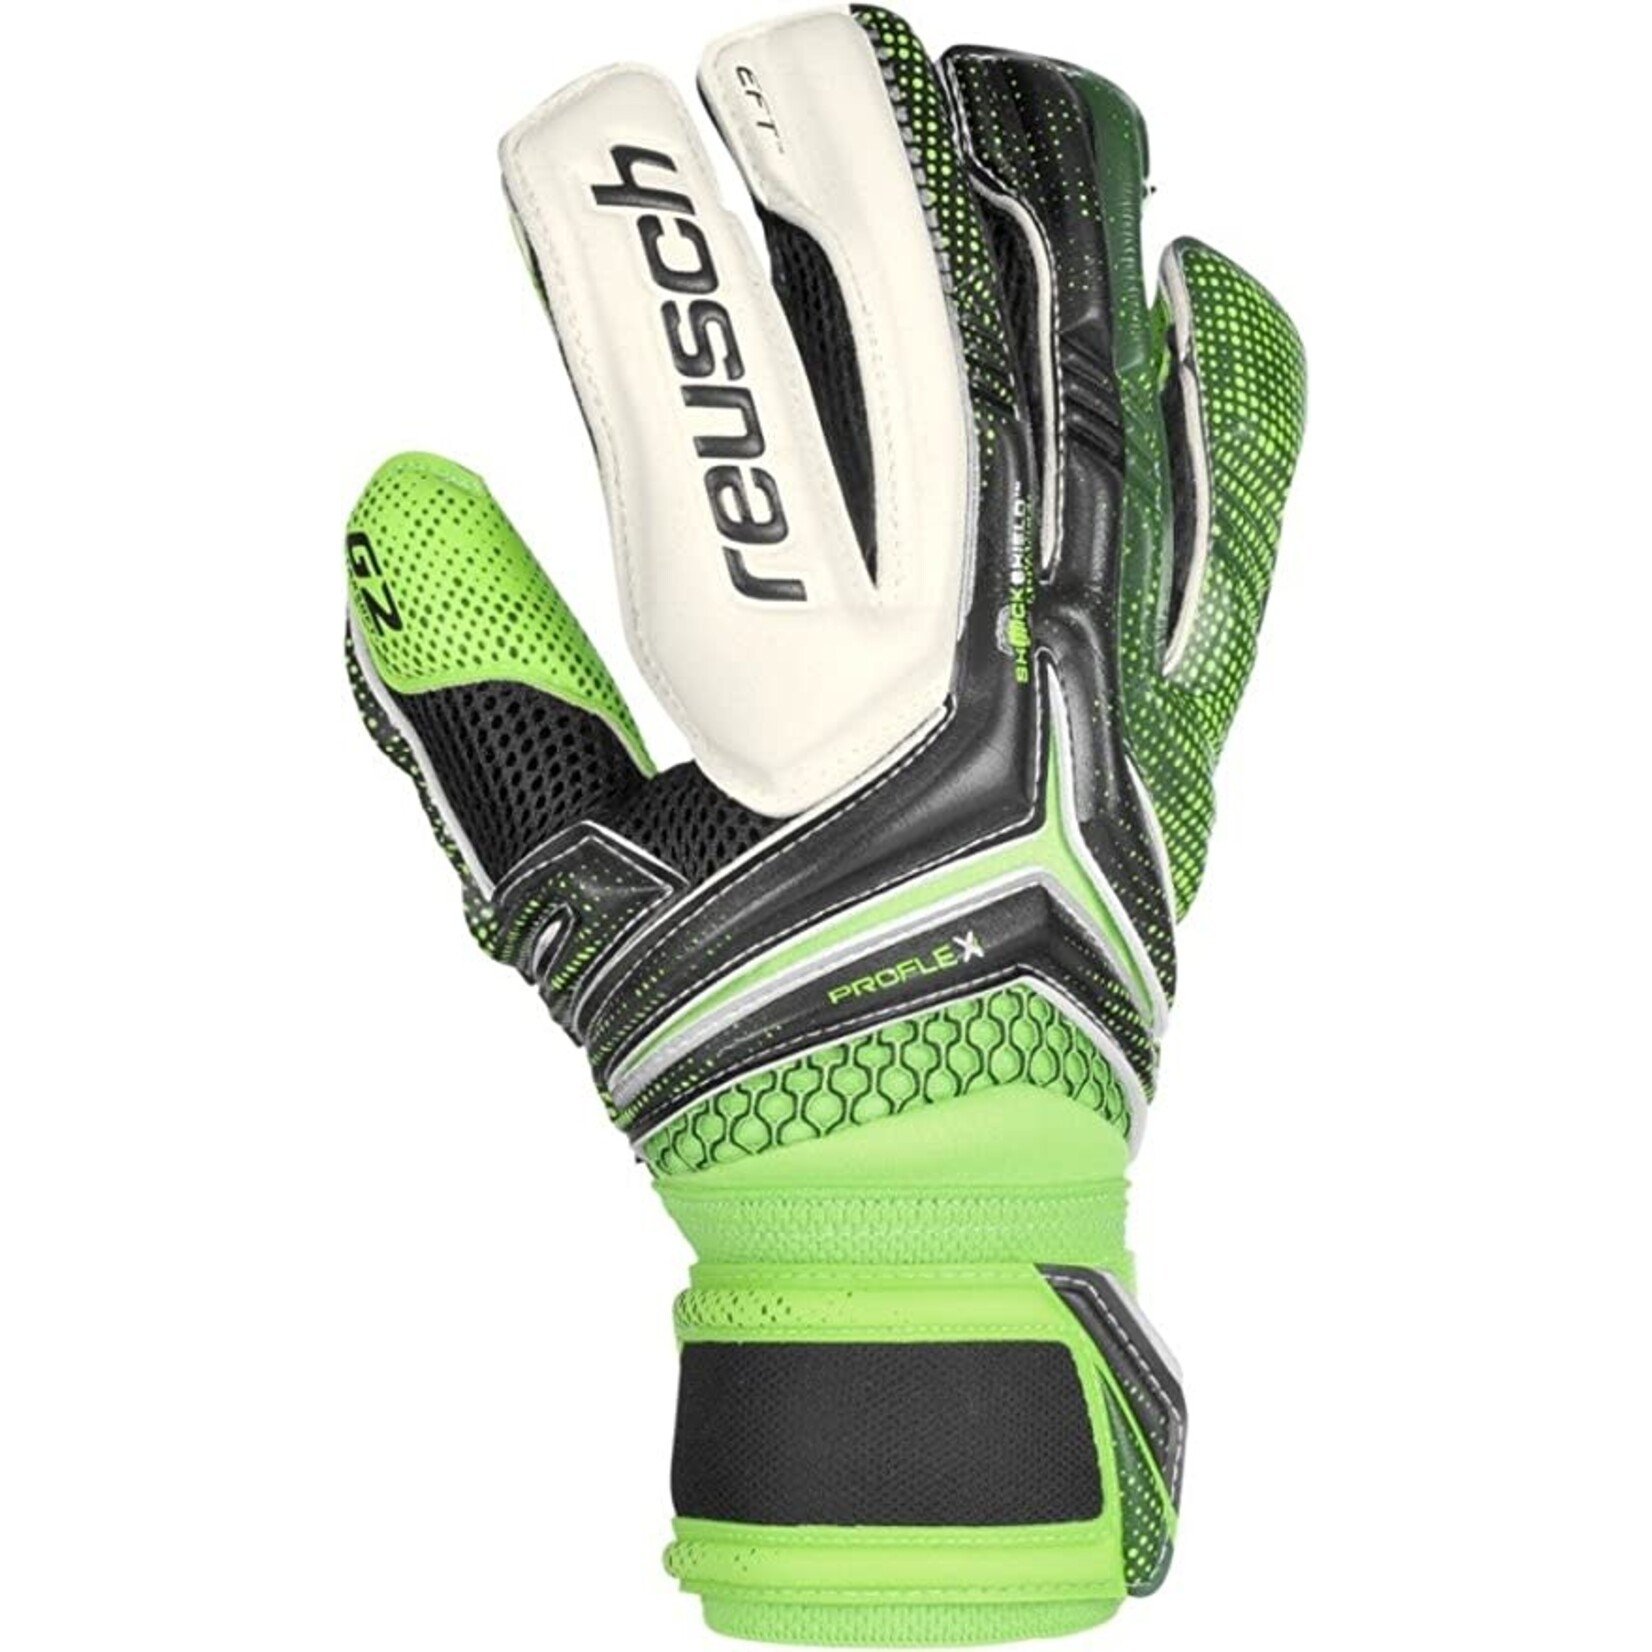 Reusch Re:ceptor Deluxe G2 Goalkeeper Gloves Black/Dark Green/Green Gecko